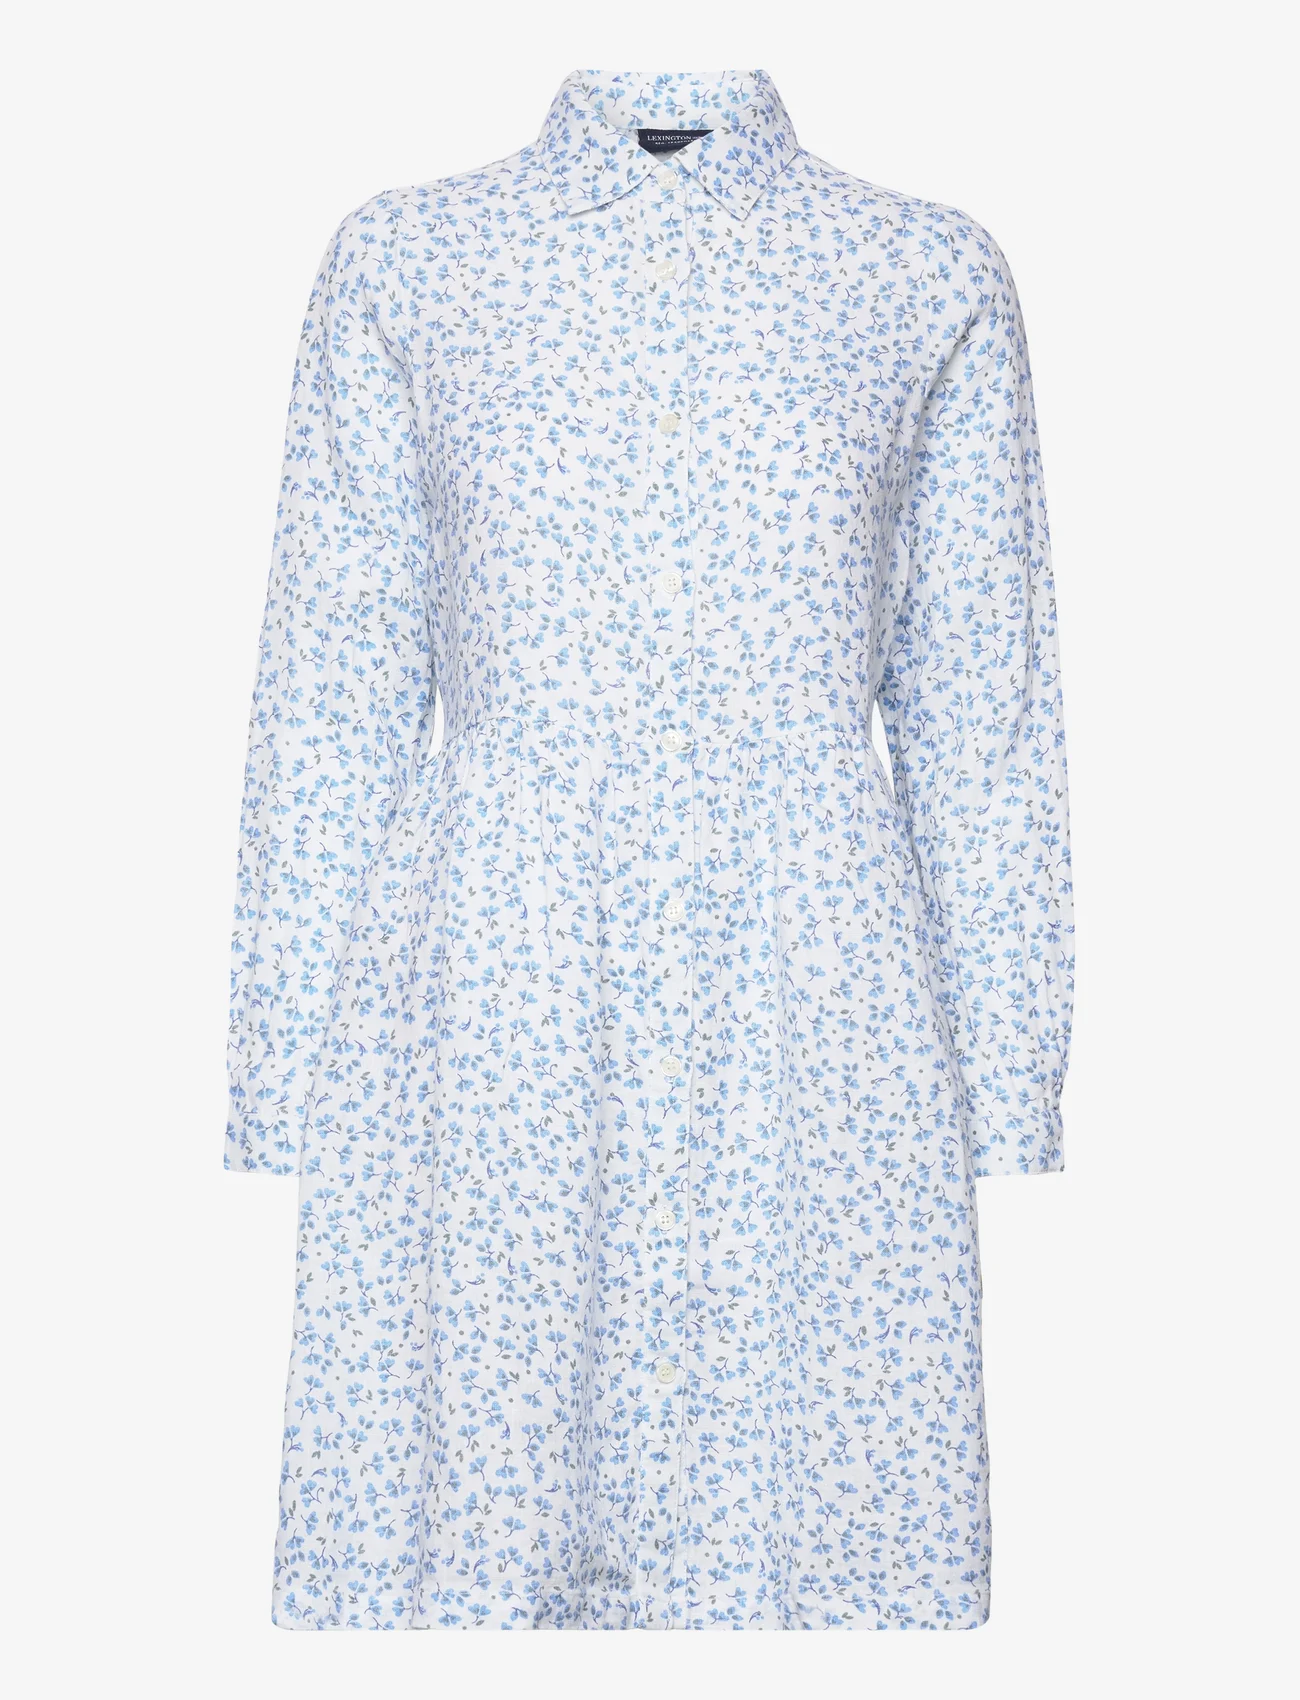 Lexington Clothing - Andrea Linen Dress - sommerkleider - blue flower print - 0